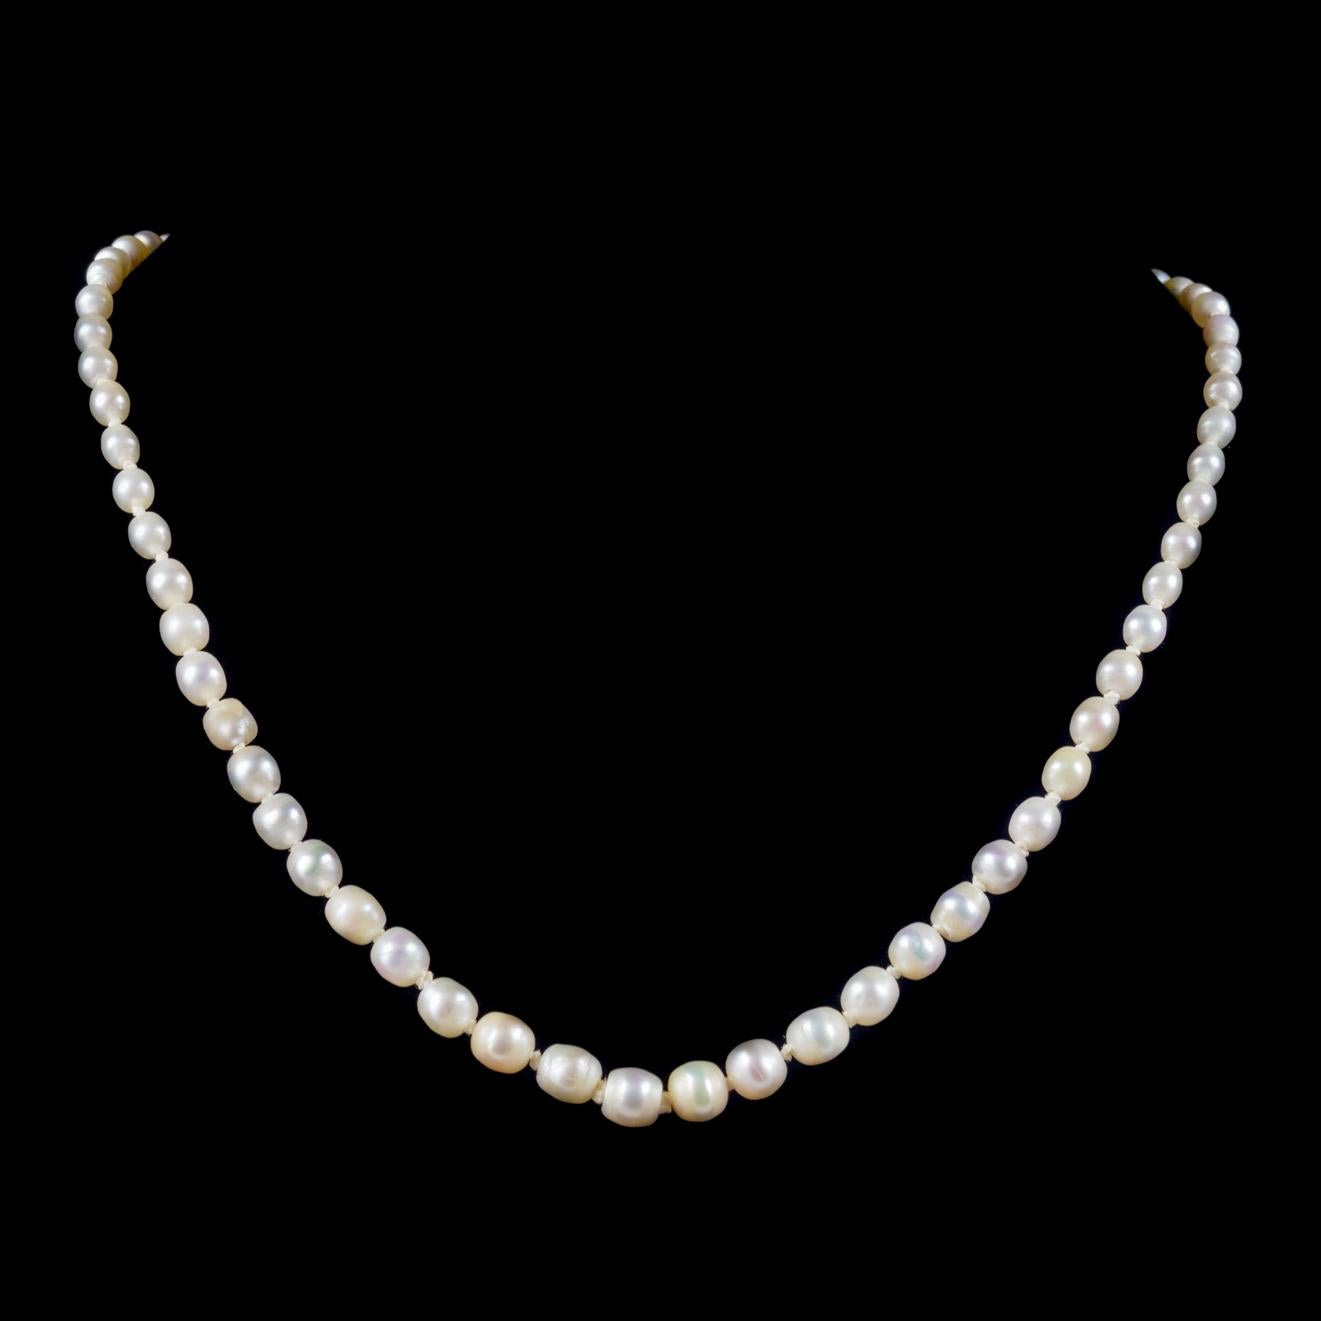 Eine elegante antike viktorianische Halskette aus der Zeit um 1900, gesäumt von reizenden natürlichen Perlen, die in ihrer Größe abgestuft sind und zu einem fabelhaften, mit Diamanten besetzten Silberverschluß führen.  

Perlen sind ein wahres